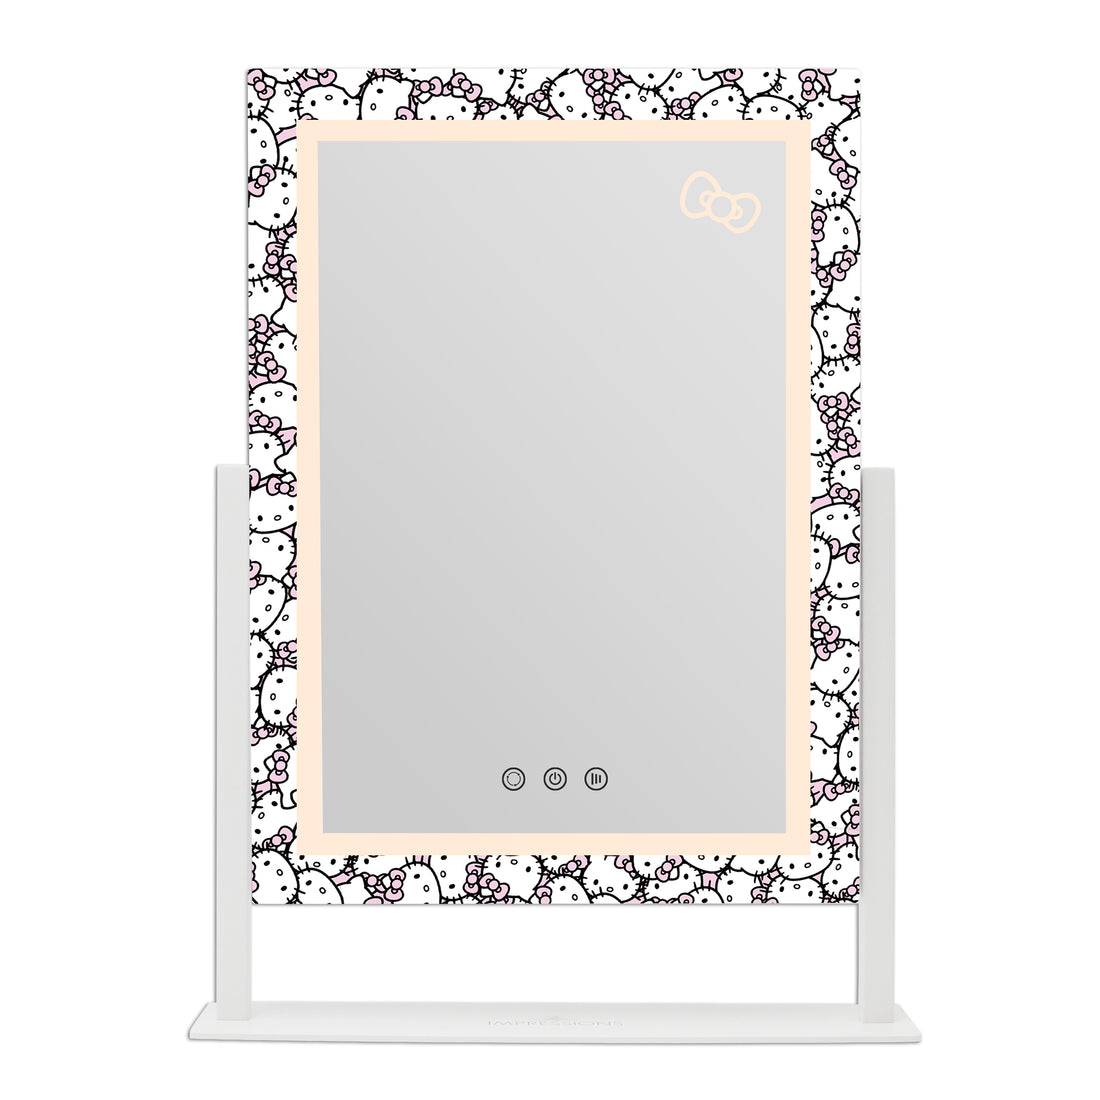 Impressions Vanity Hello Kitty Spiegel mit Lichtern, Trifold LED Tri-Tone  Make-up Spiegel mit Touch-Sensor und drei verstellbaren Spiegelpaneelen